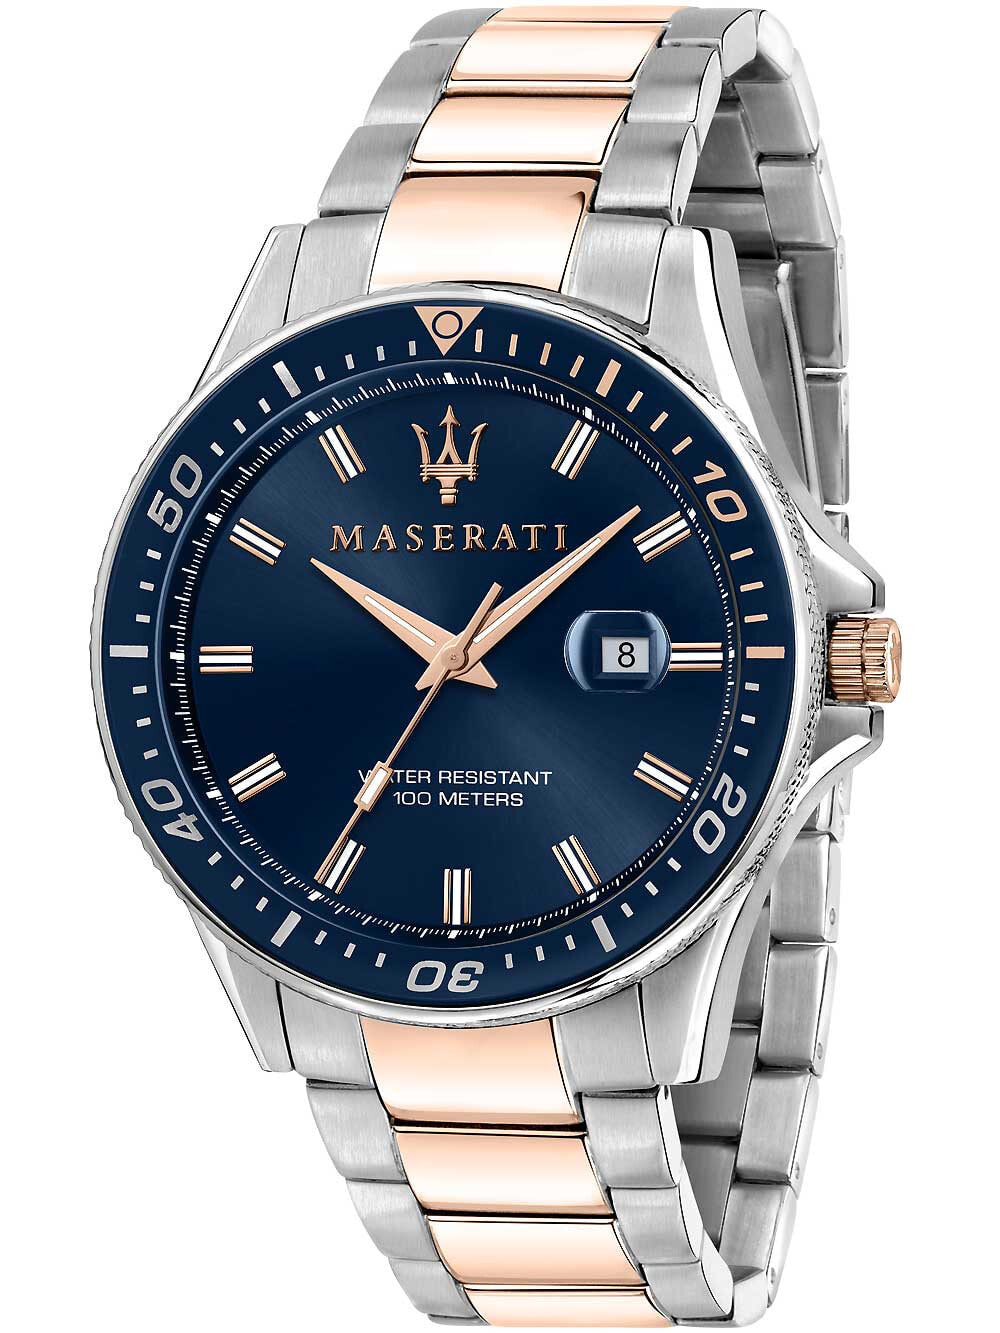 Мужские наручные часы с серебряным браслетом Maserati R8853140003 Sfida mens watch 44mm 10ATM